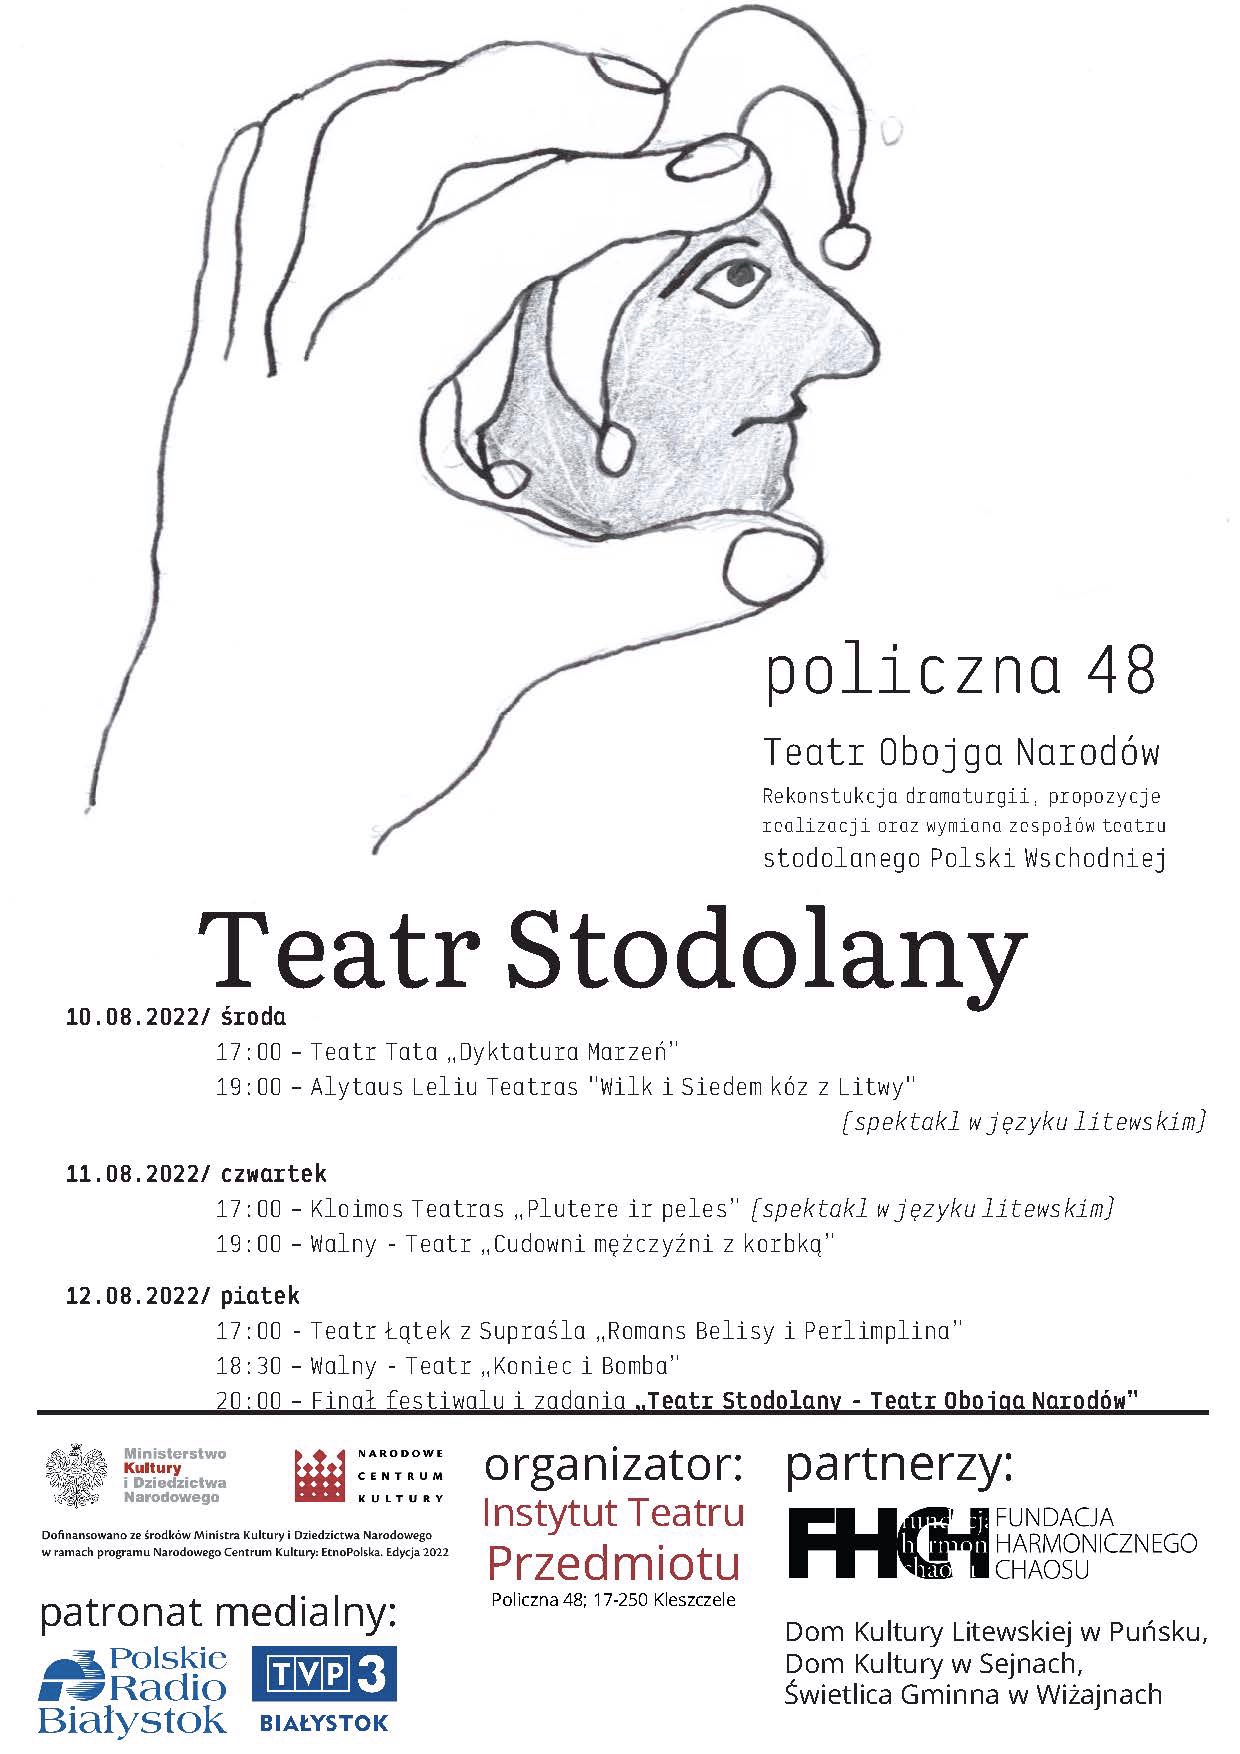 Teatr Stodolany